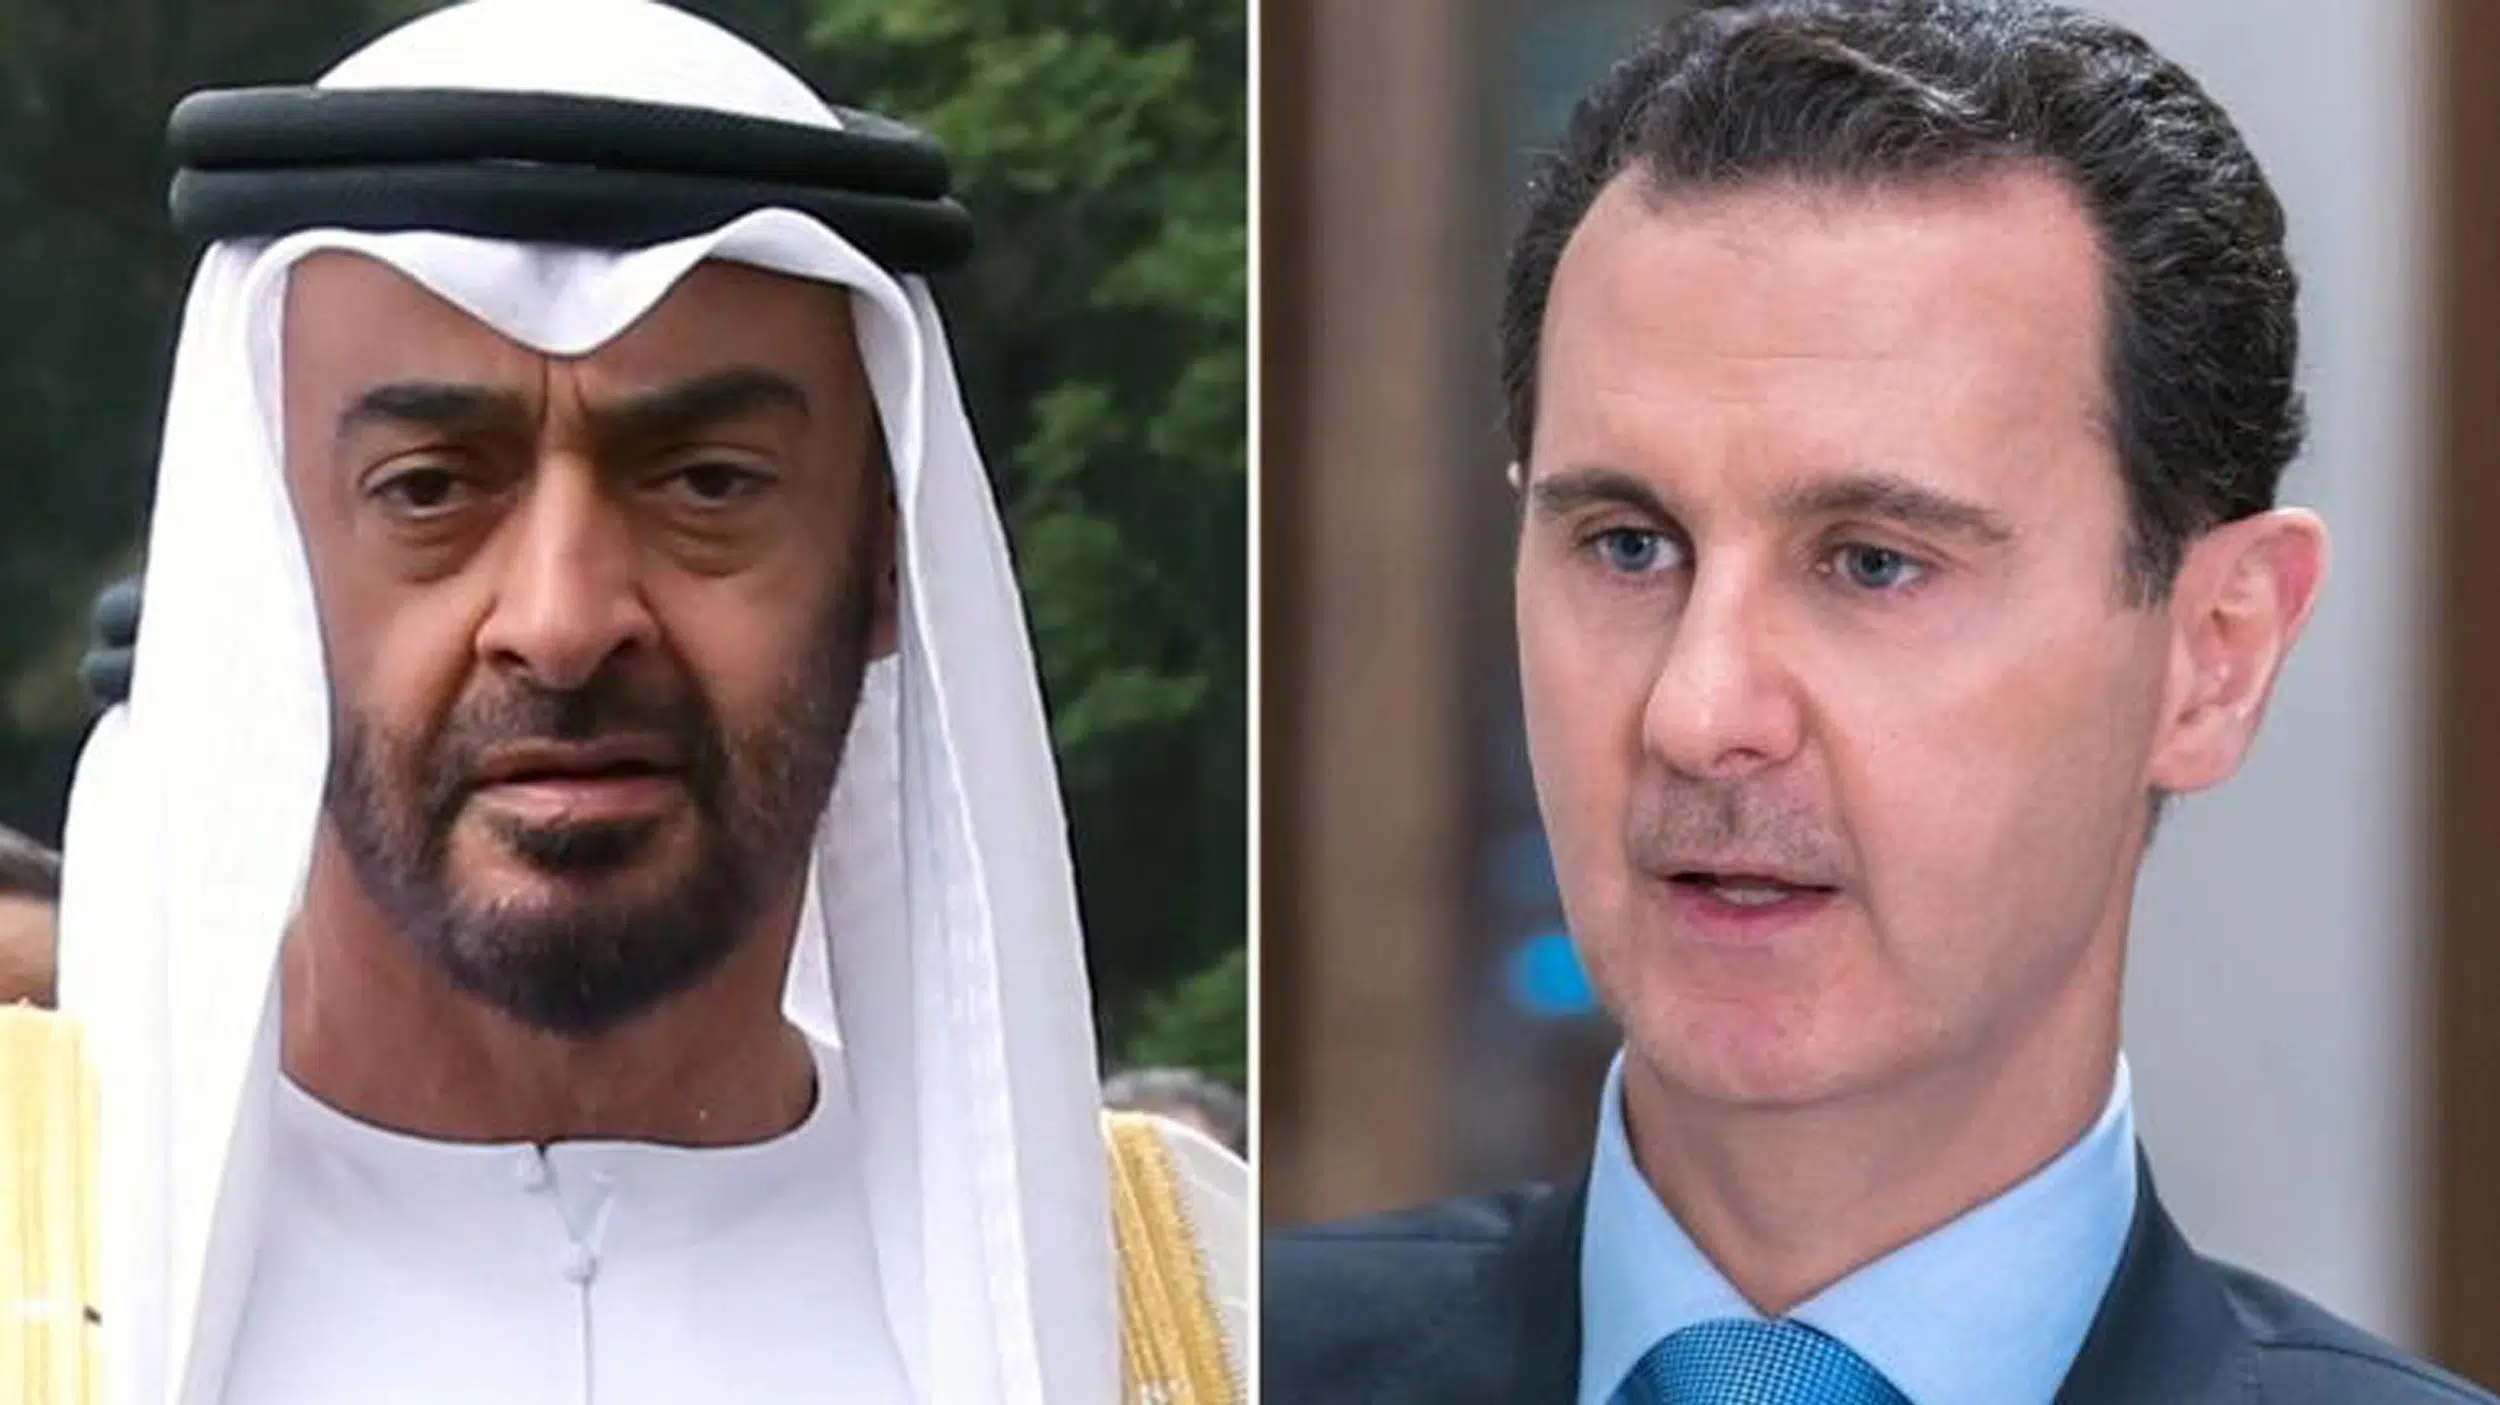 الإمارات تكشف هدف زيارة الرئيس السوري بشار الأسد